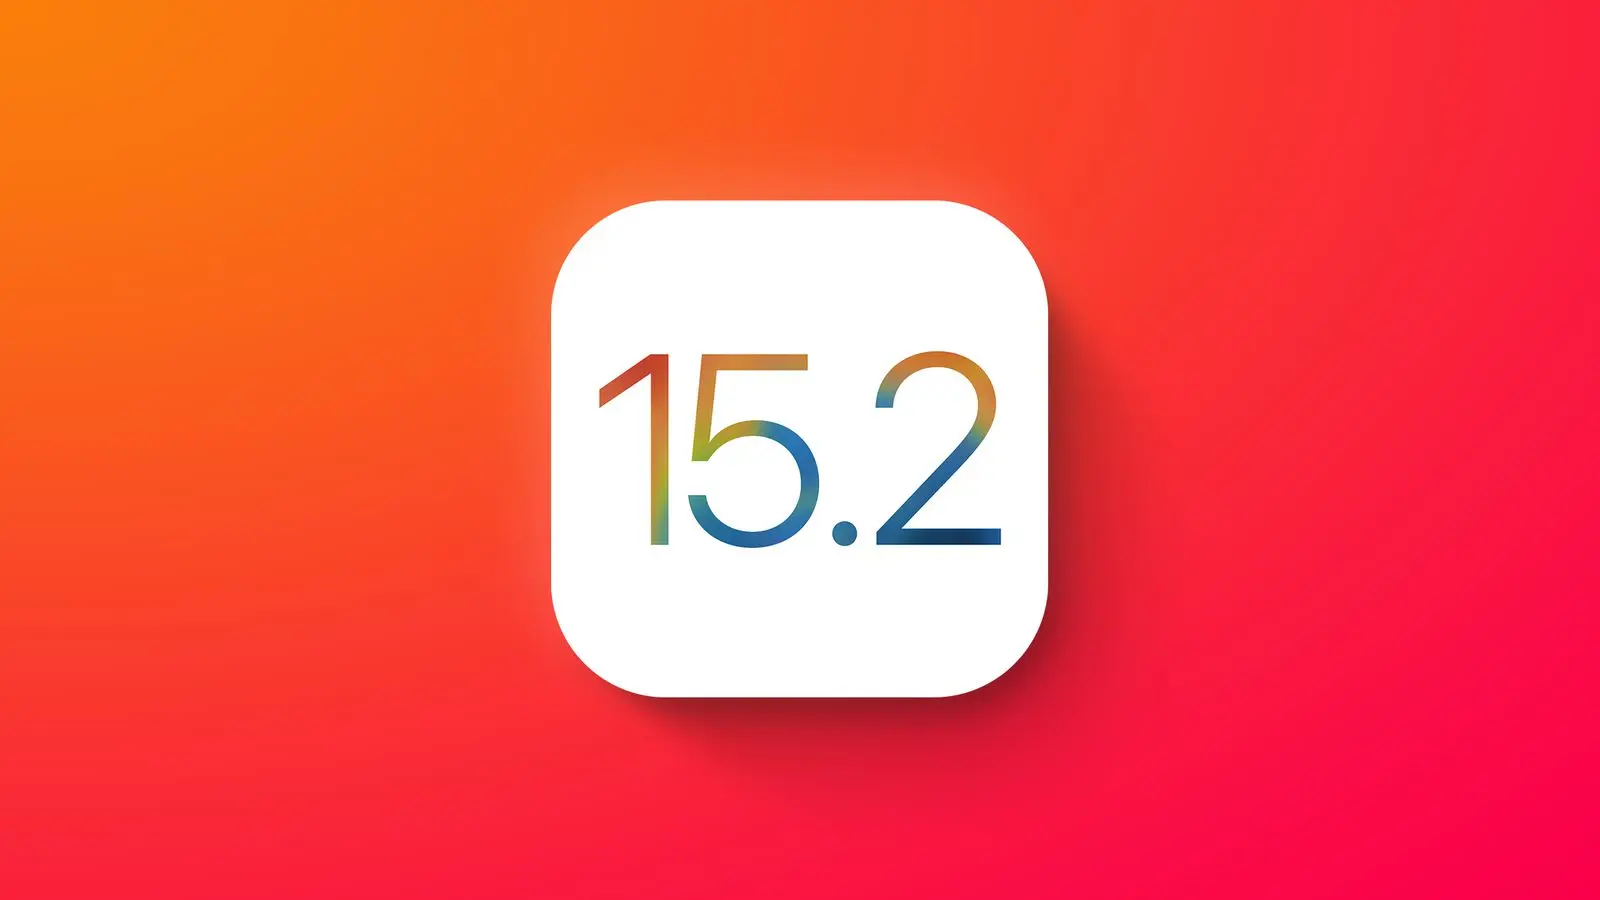 Apple phát hành iOS và iPadOS 15.2.1 sửa lỗi không hiển thị hình trong Messages, CarPlay